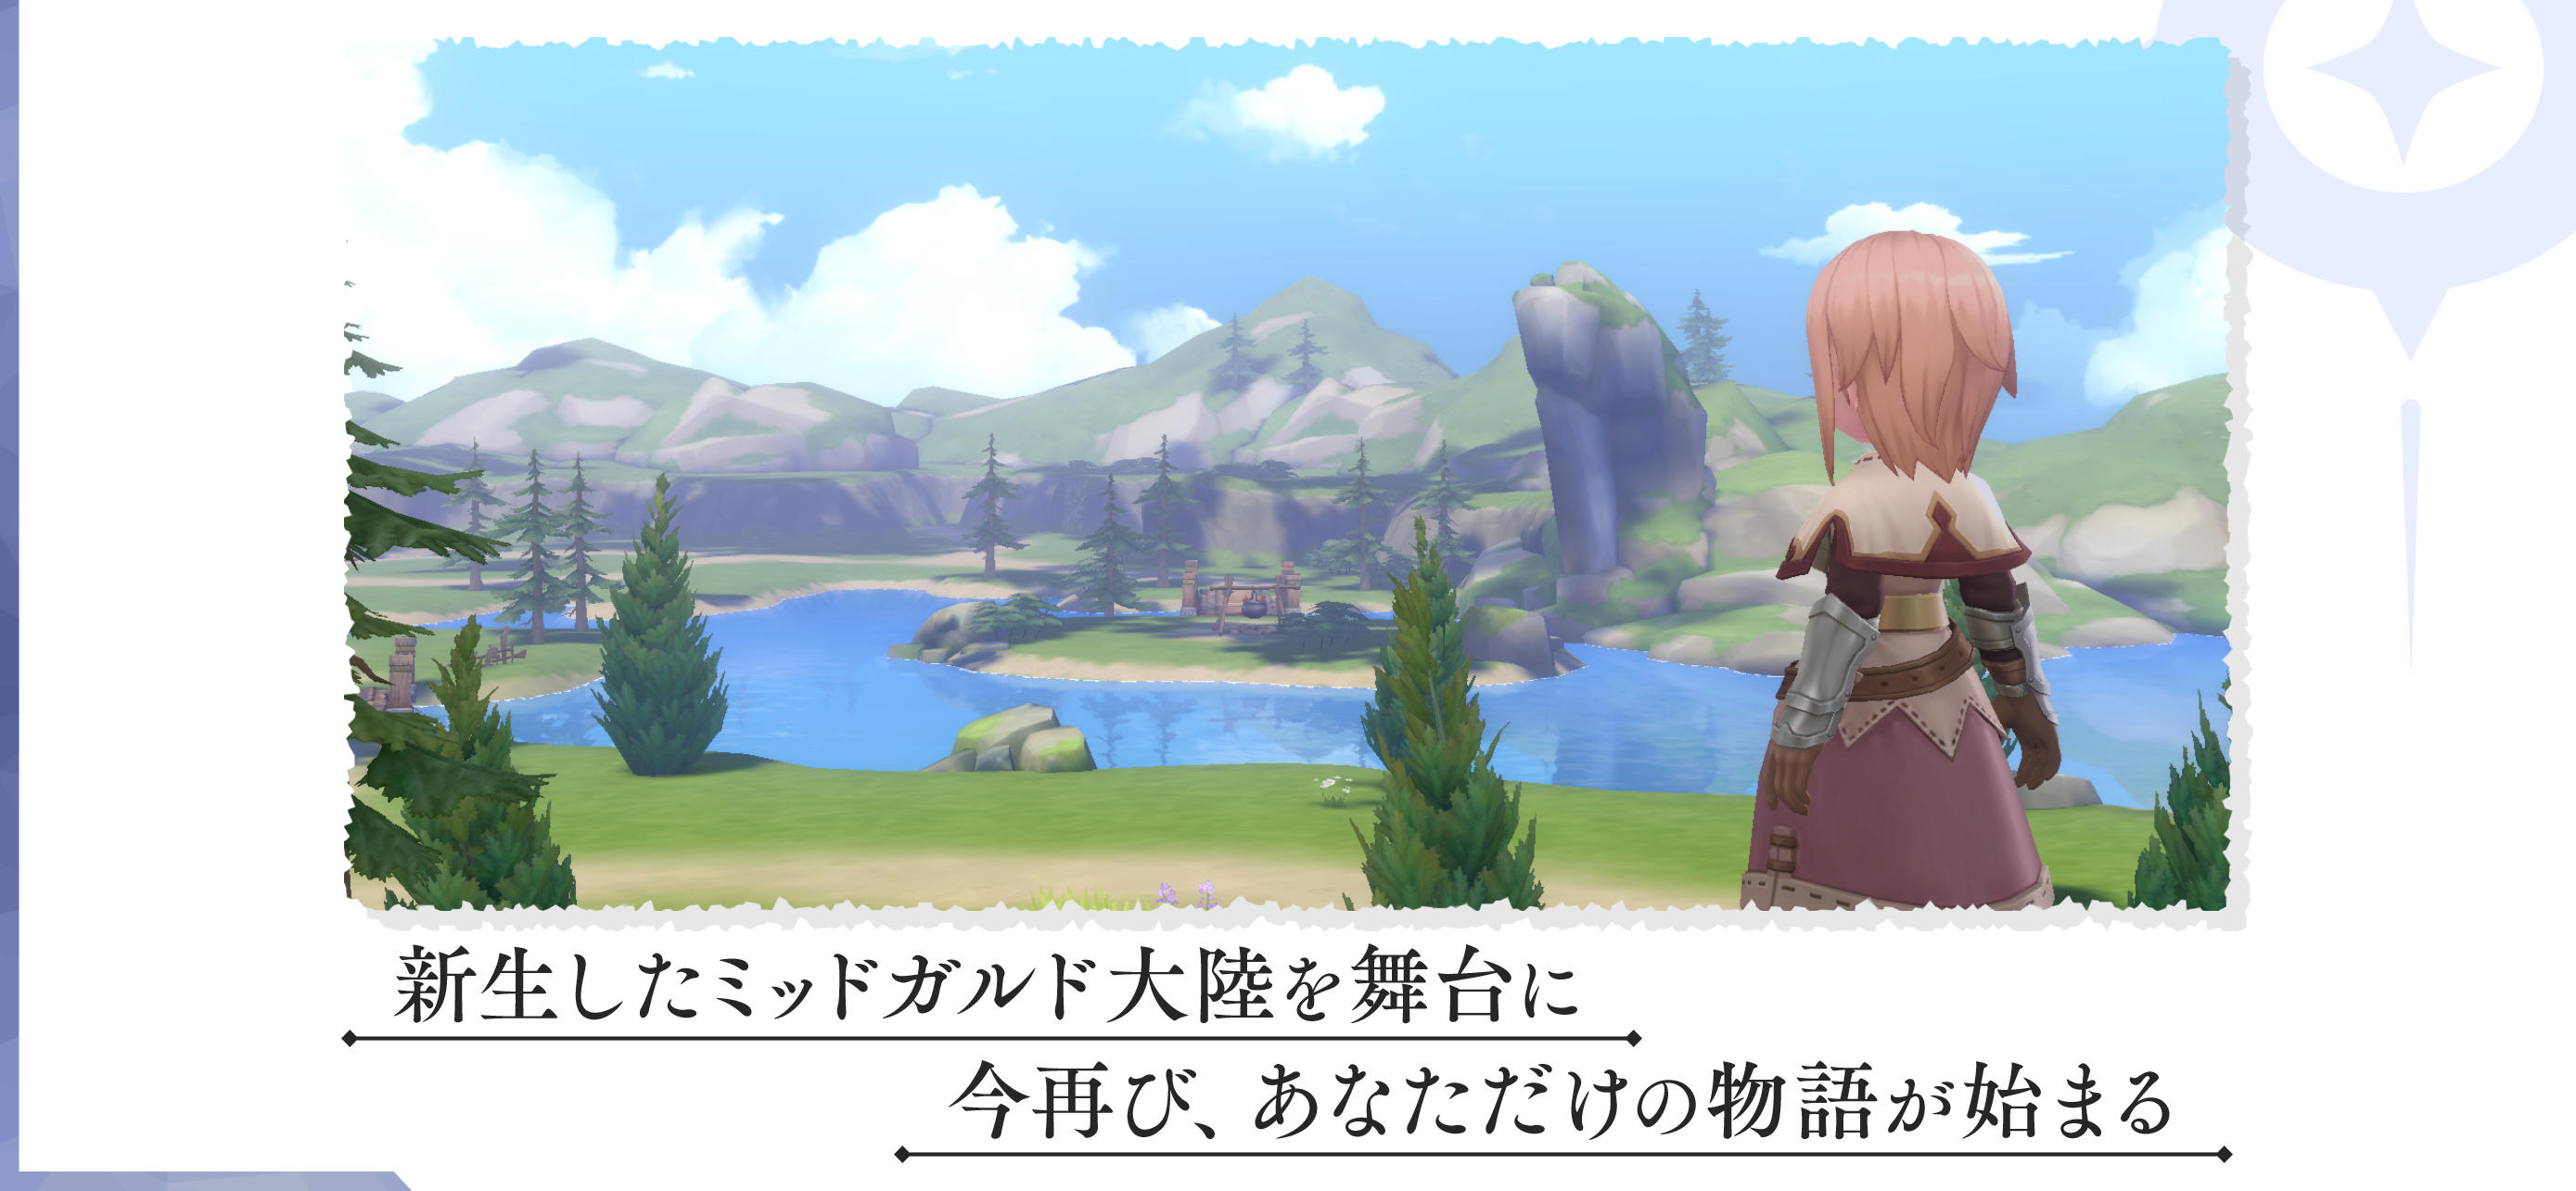 Screenshot 1 of 仙境傳說ORIGIN 3.13.1